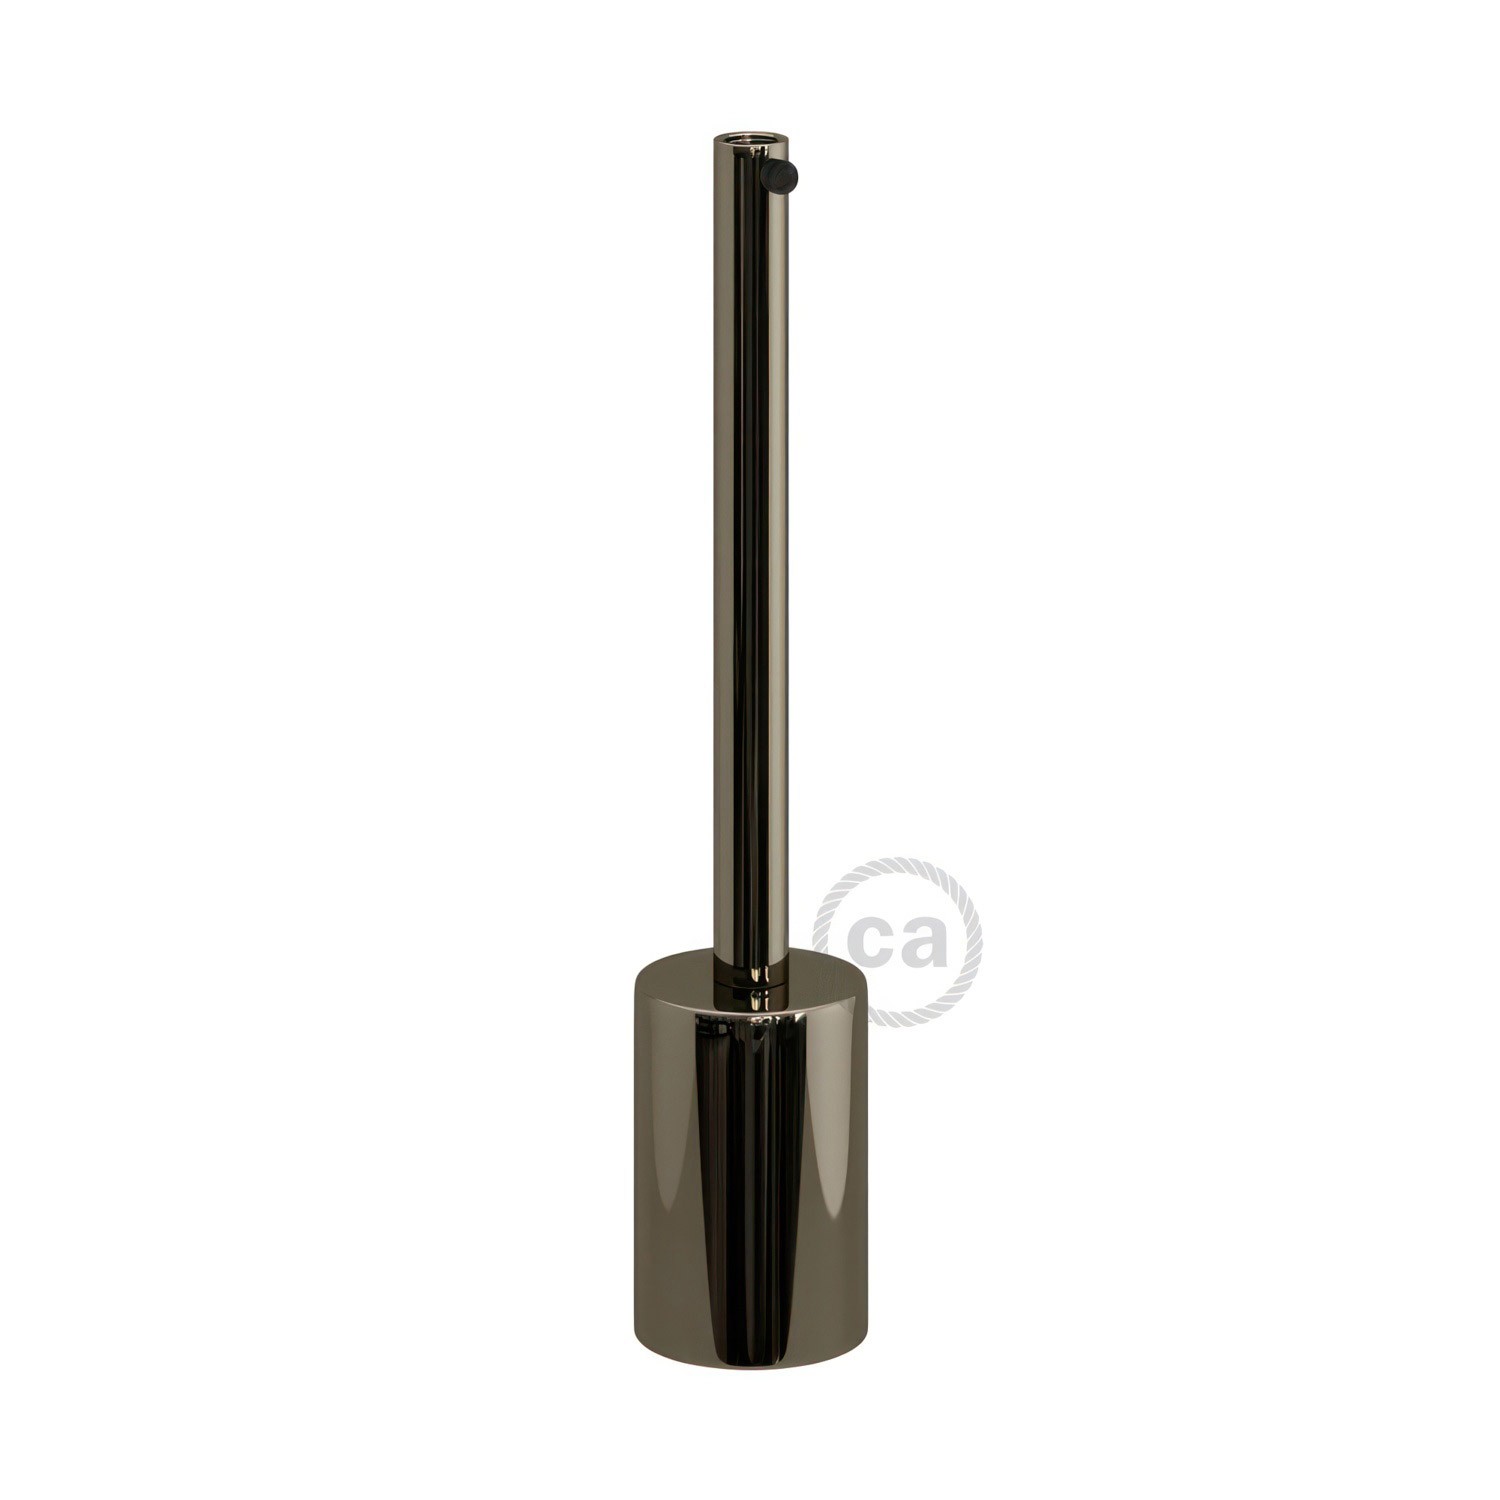 Kit cylindrisk lamphållare E27 i metall med 15 cm lång dravaglastare